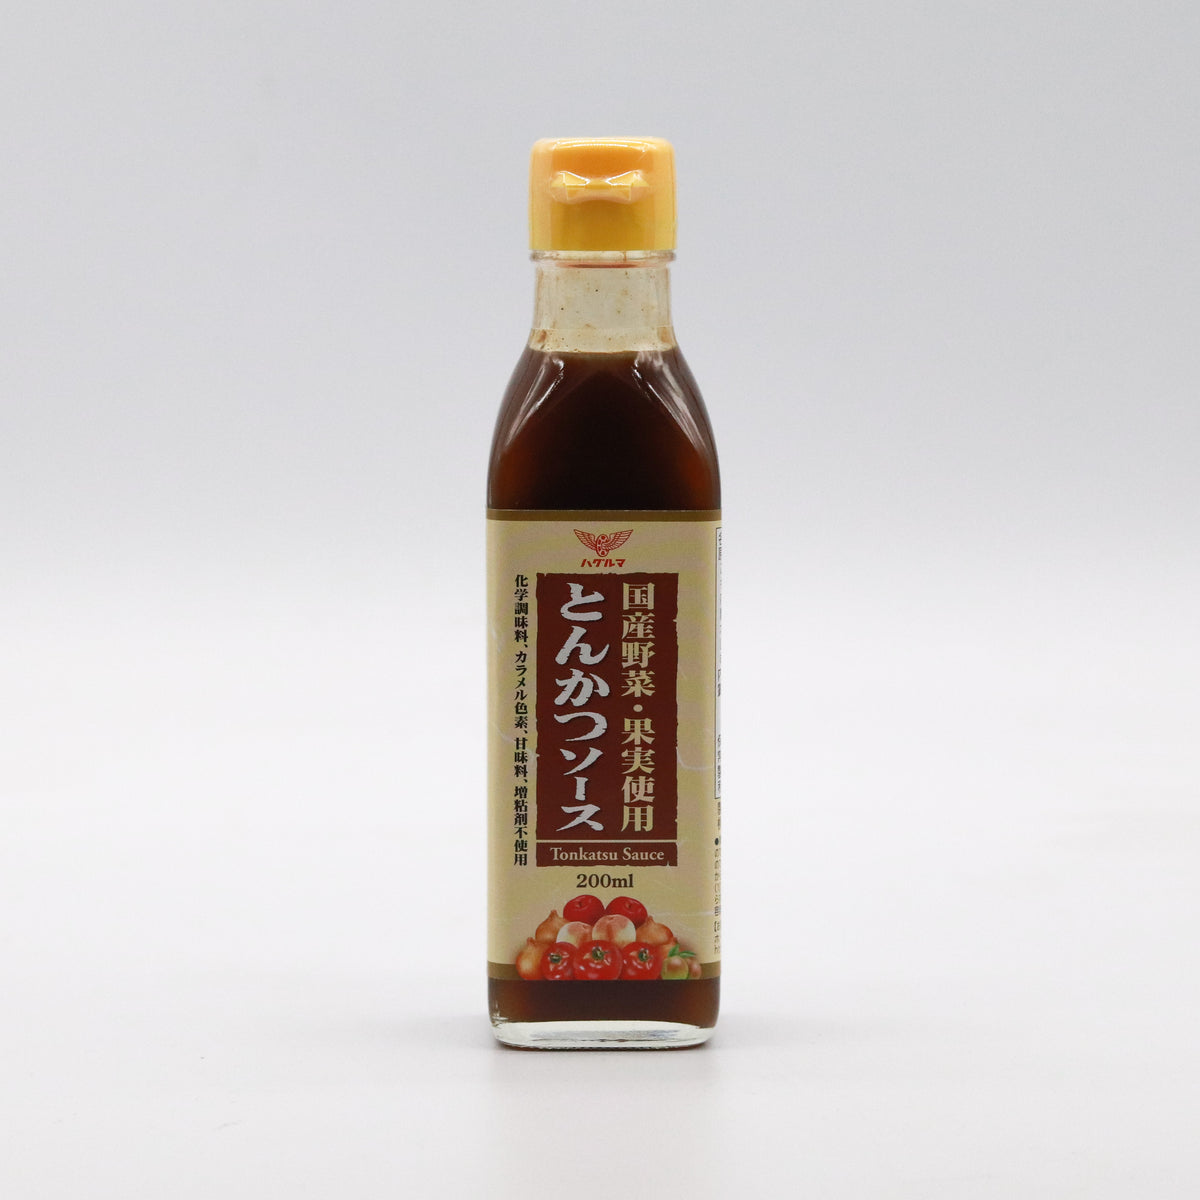 Hagaruma Premium Tonkatsu Sauce 200g